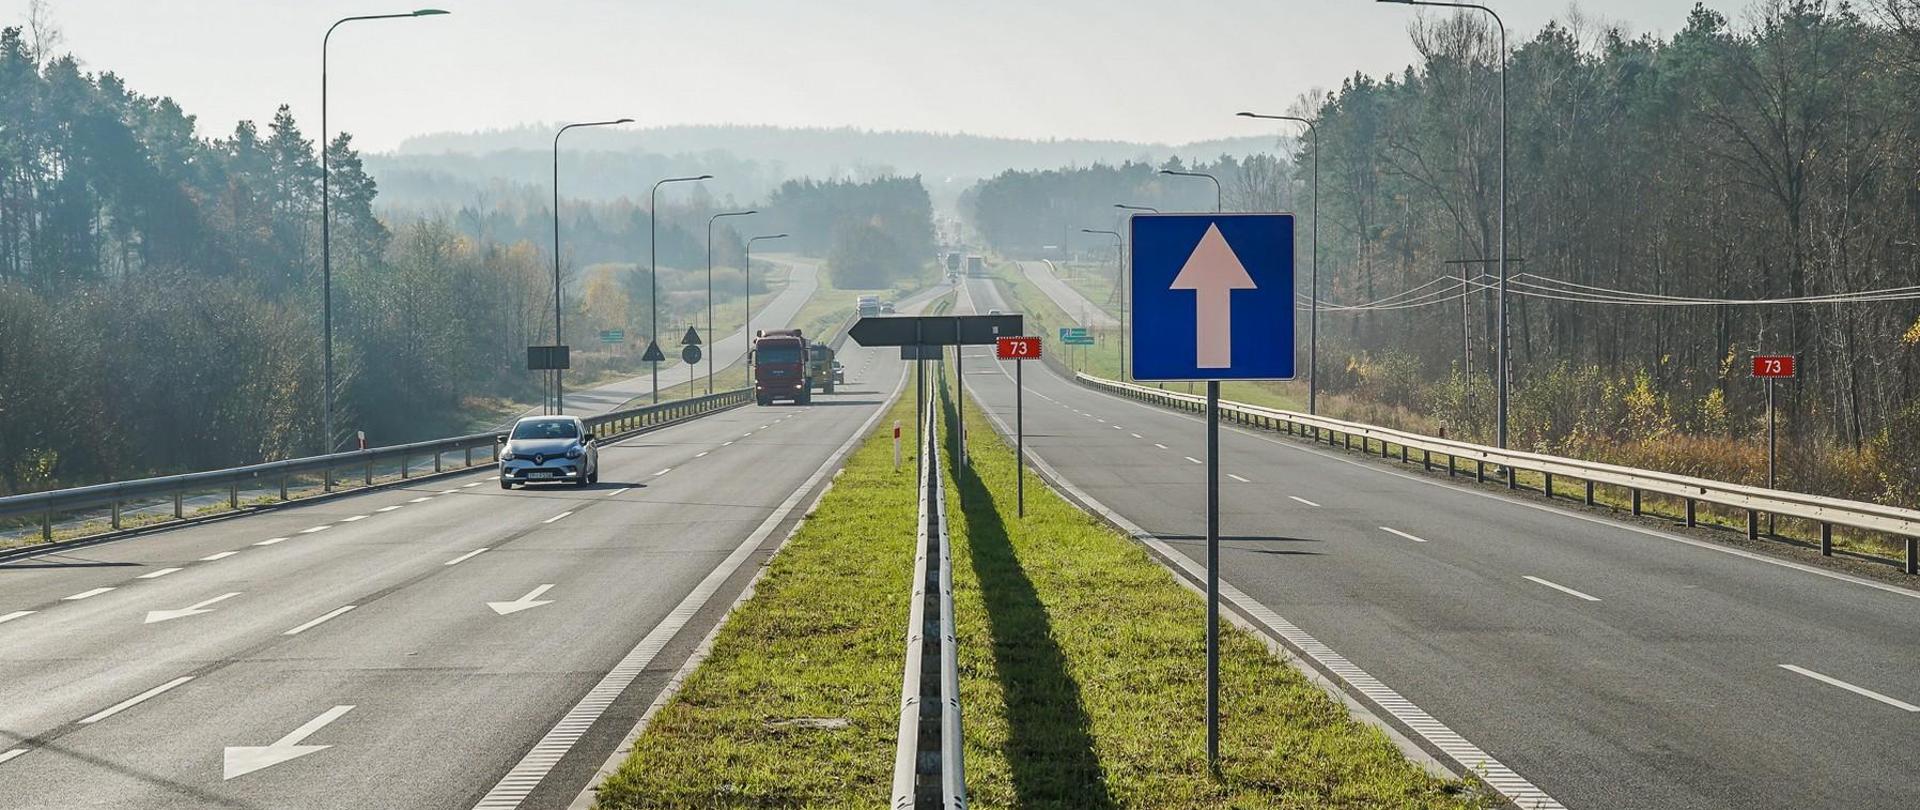 Obwodnica Morawicy etap I - dwujezdniowa droga, jadące samochody, znaki drogowe i tablice m.in. z numerem drogi 73